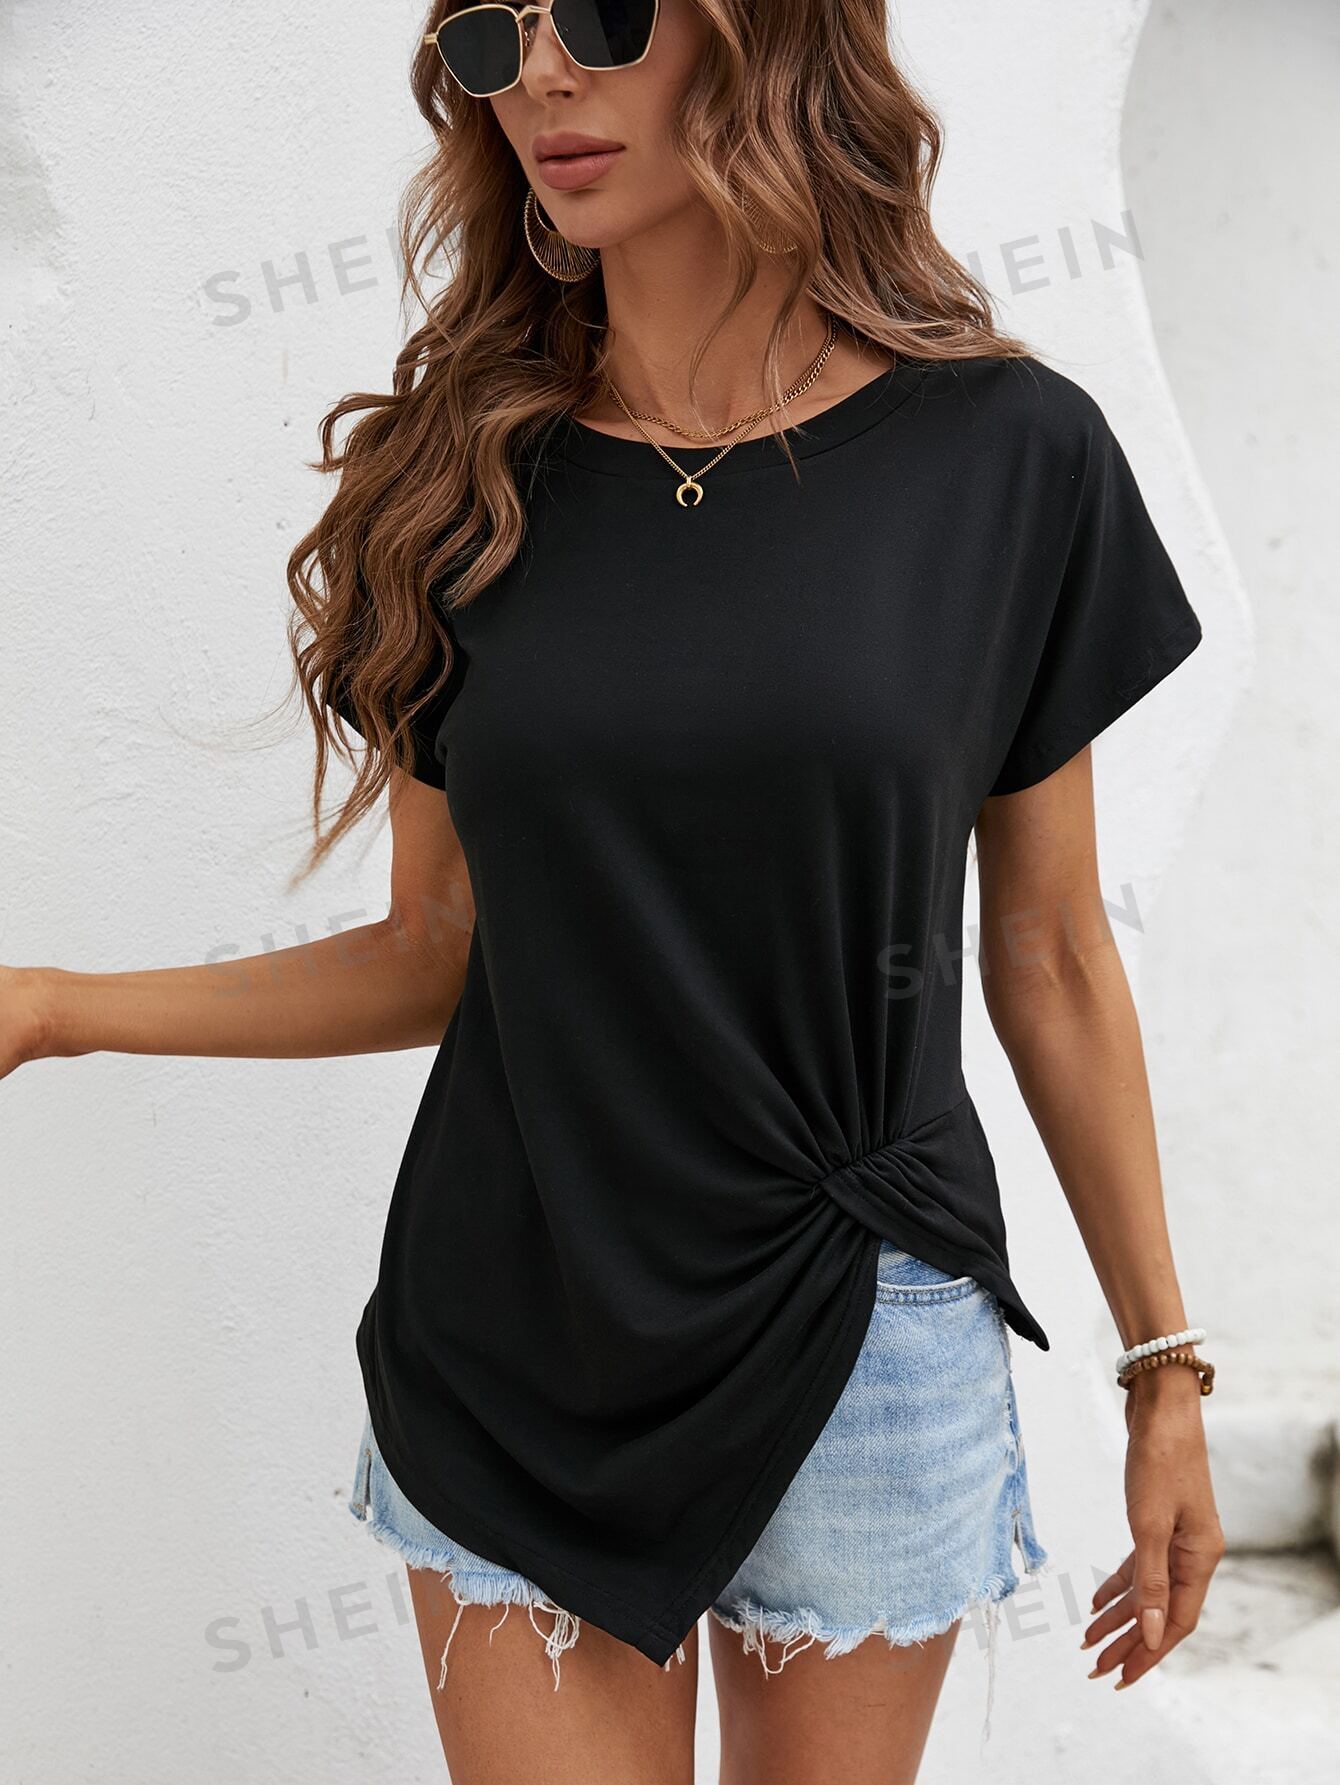 SHEIN LUNE женская летняя удобная футболка с короткими рукавами и круглым вырезом, черный женская футболка с длинным рукавом с разрезом